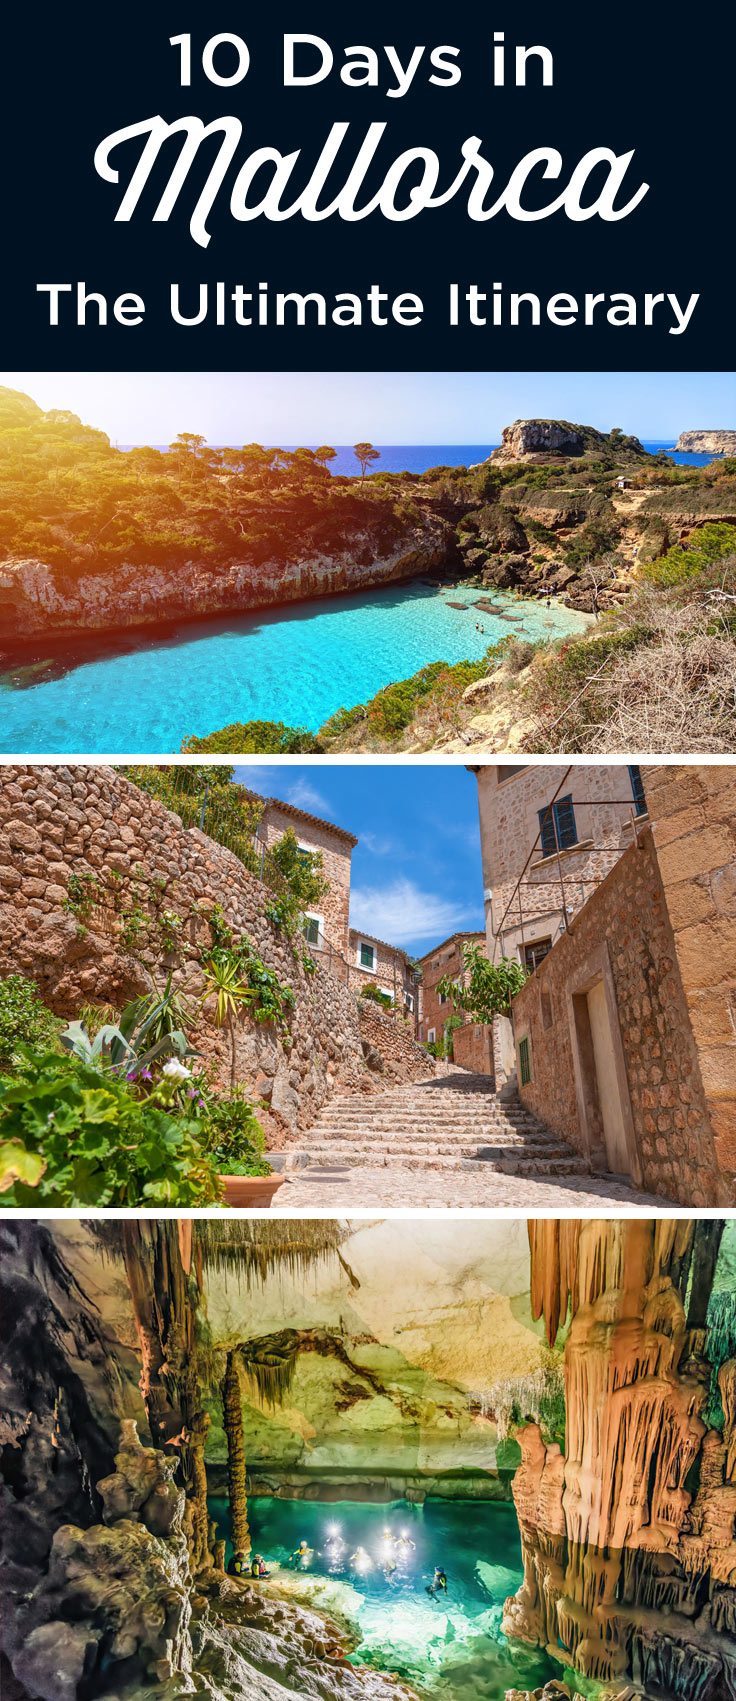 Mallorca itinerary 10 days